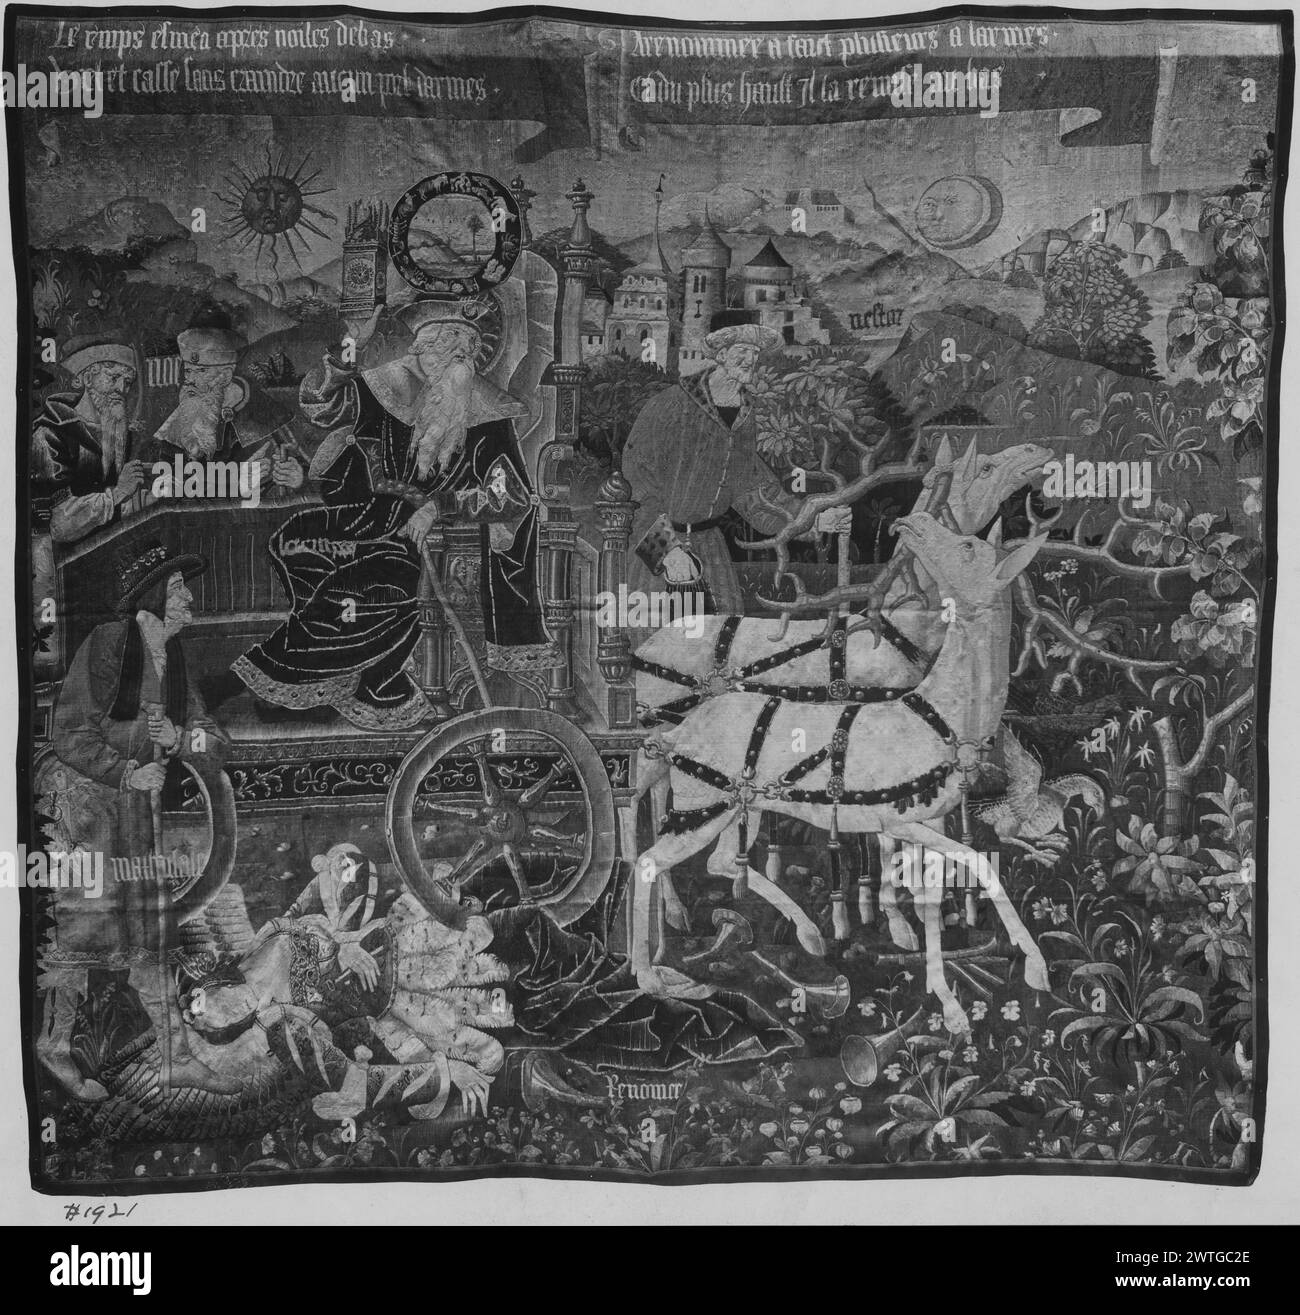 Triomphe du temps sur la renommée. Unknown c. 1500-1530 tapisserie dimensions : H 12'6,25' x l 12'4,25' tapisserie matériaux/techniques : laine (chaîne : 4-5/cm) ; laine et soie (trame) culture : Sud des pays-Bas histoire de propriété : Français et Co. acheté à Arnold Seligmann Rey & Co., Inc. 11/16/1916 ; vendu à George Pratt le 19/02/1921. Legs de George D. Pratt, 1935. États-Unis, New York, New York, le Metropolitan Museum of Art, accno. 41.167.1. Inscriptions : inscription sur banderoles au-dessus de la scène : le [t]emps esmeu apres bruits debas / V[i]el et casse sans craindre aucun port darmes / A renomme a faict plusi Banque D'Images